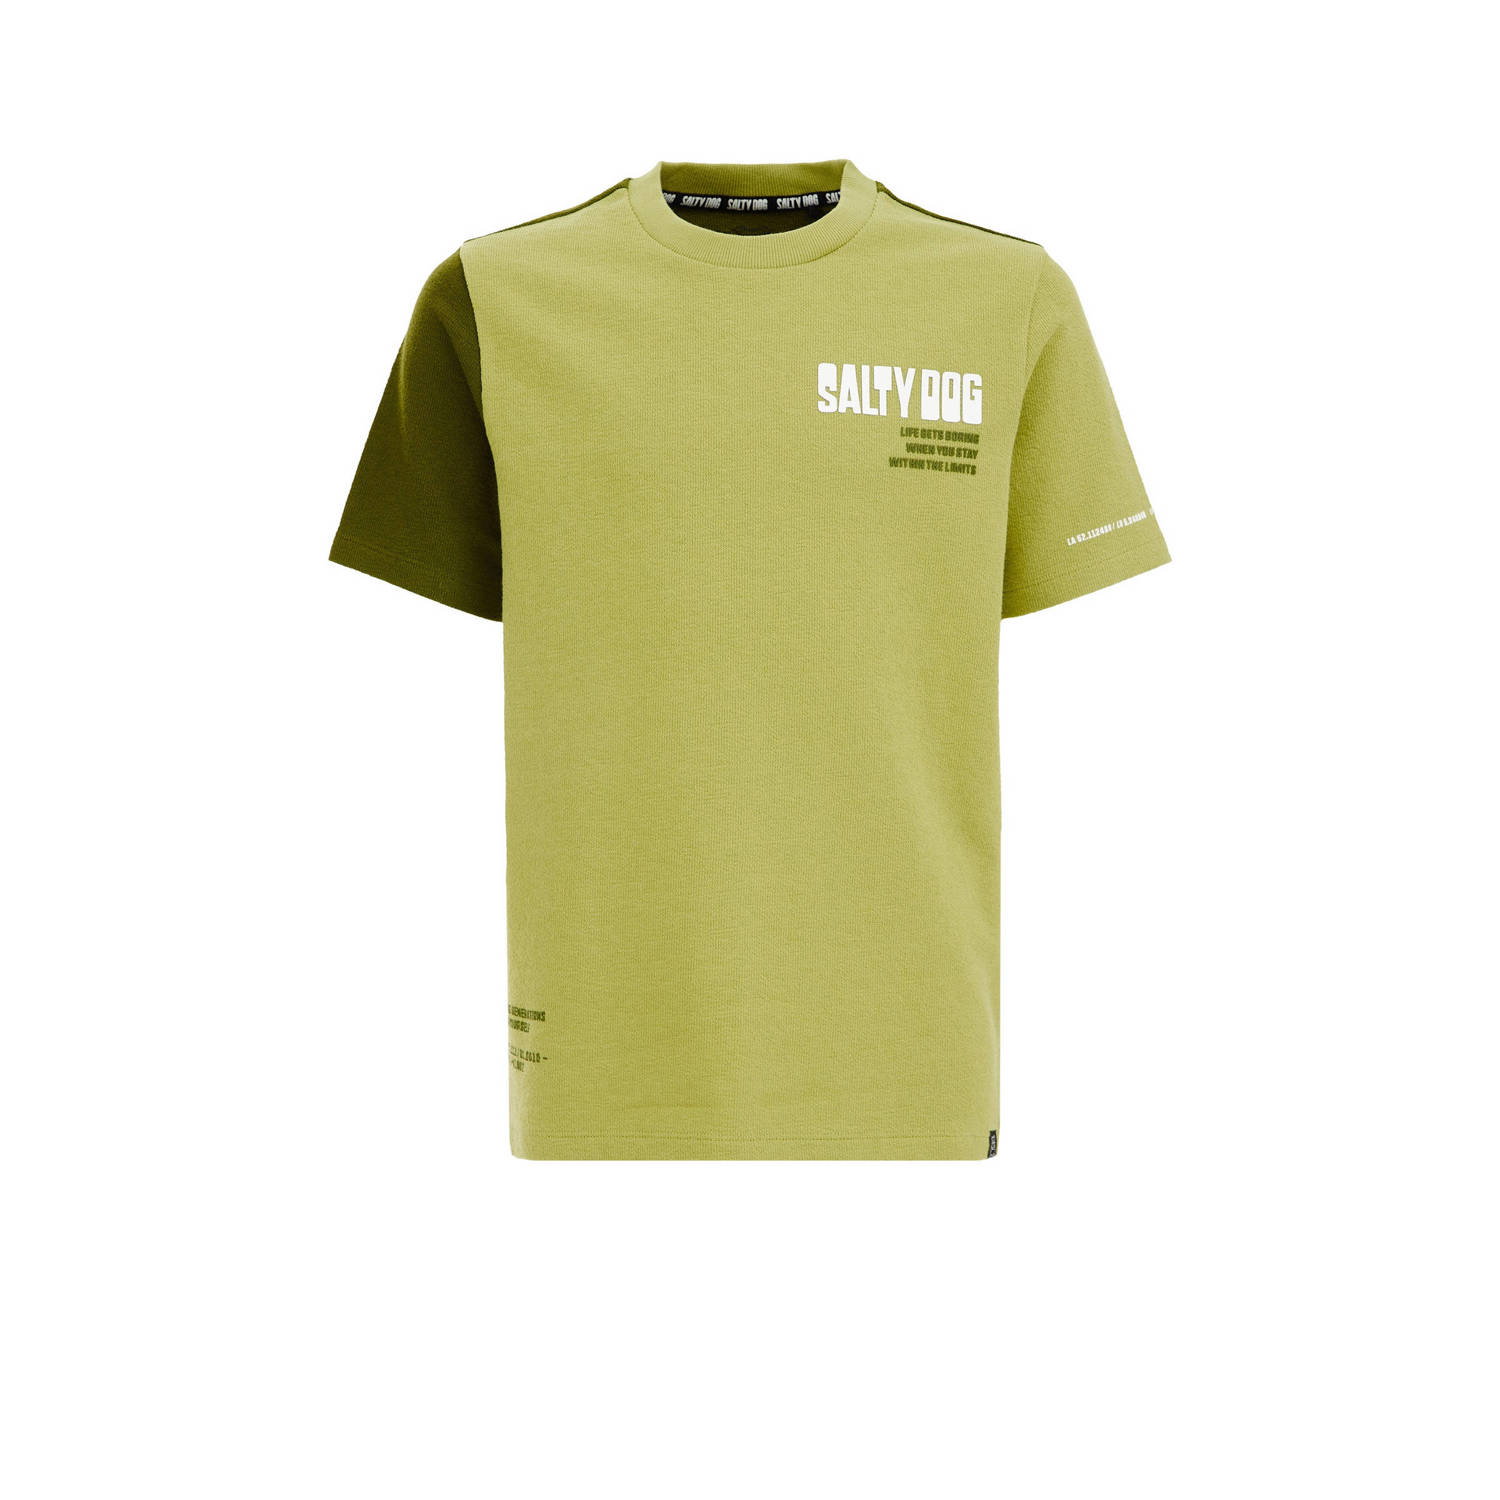 WE Fashion T-shirt groen Jongens Katoen Ronde hals Effen 110 116